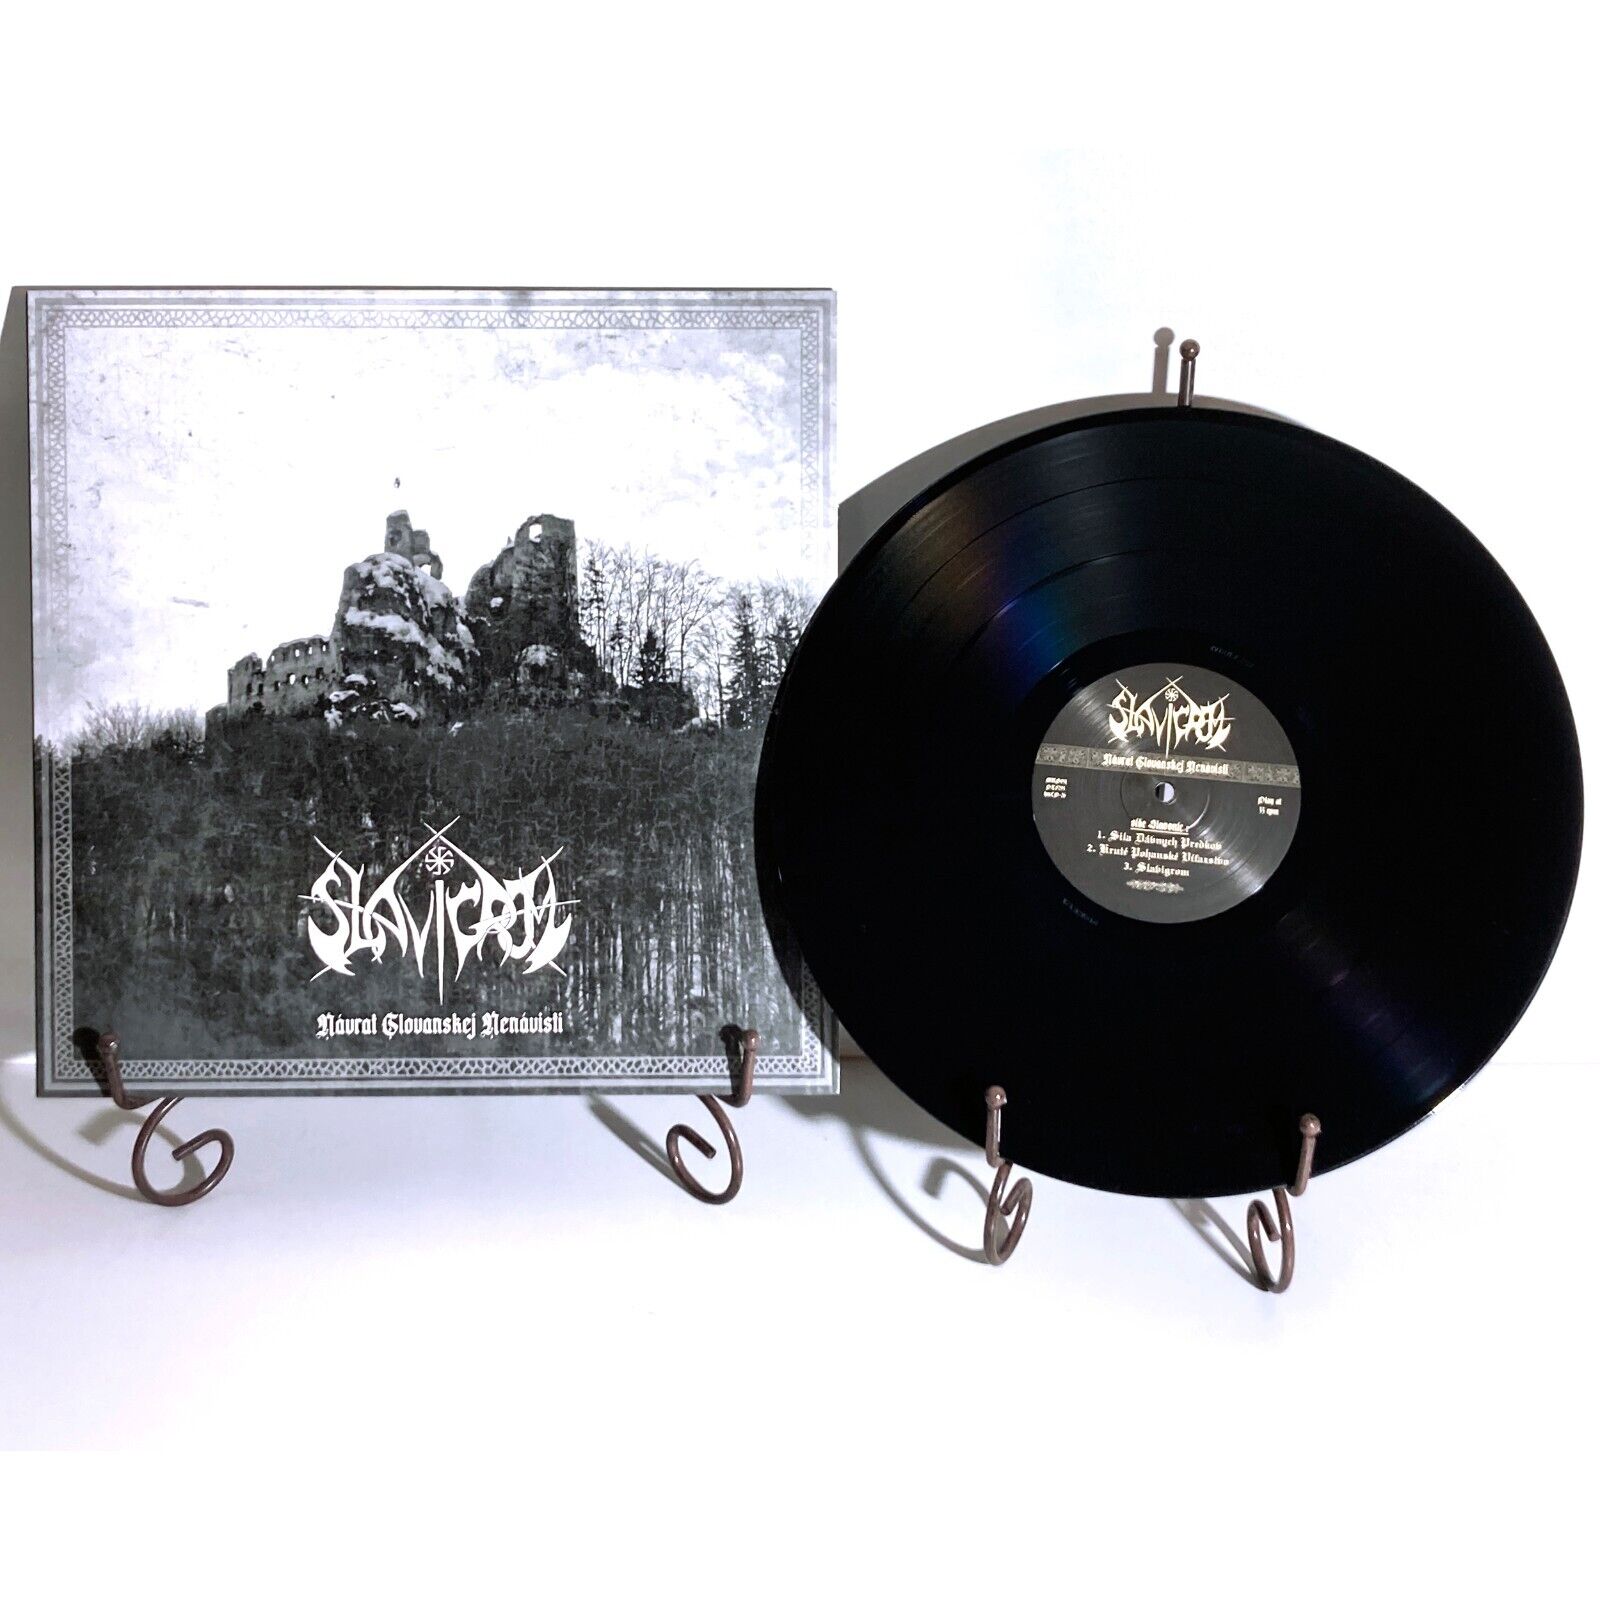 SLAVIGROM Navrat Slovanskej Nenavisti LP Black Vinyl LTD 100 Darkthrone